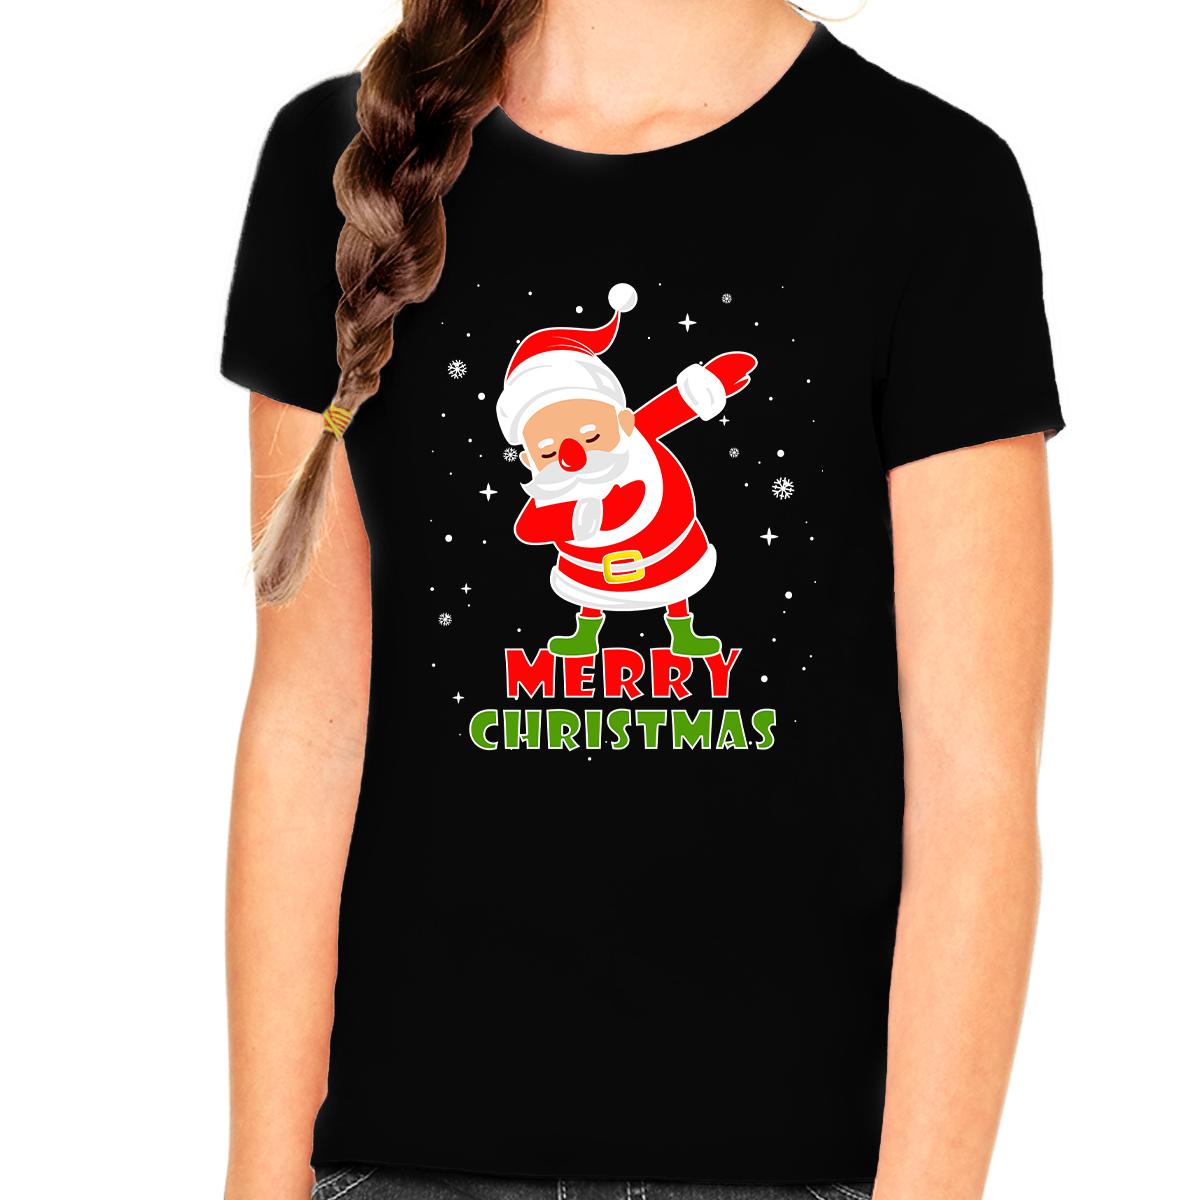 Girls Christmas Shirt Funny Christmas Outfits for Girls Dabbing Santa Christmas Shirts for Kids